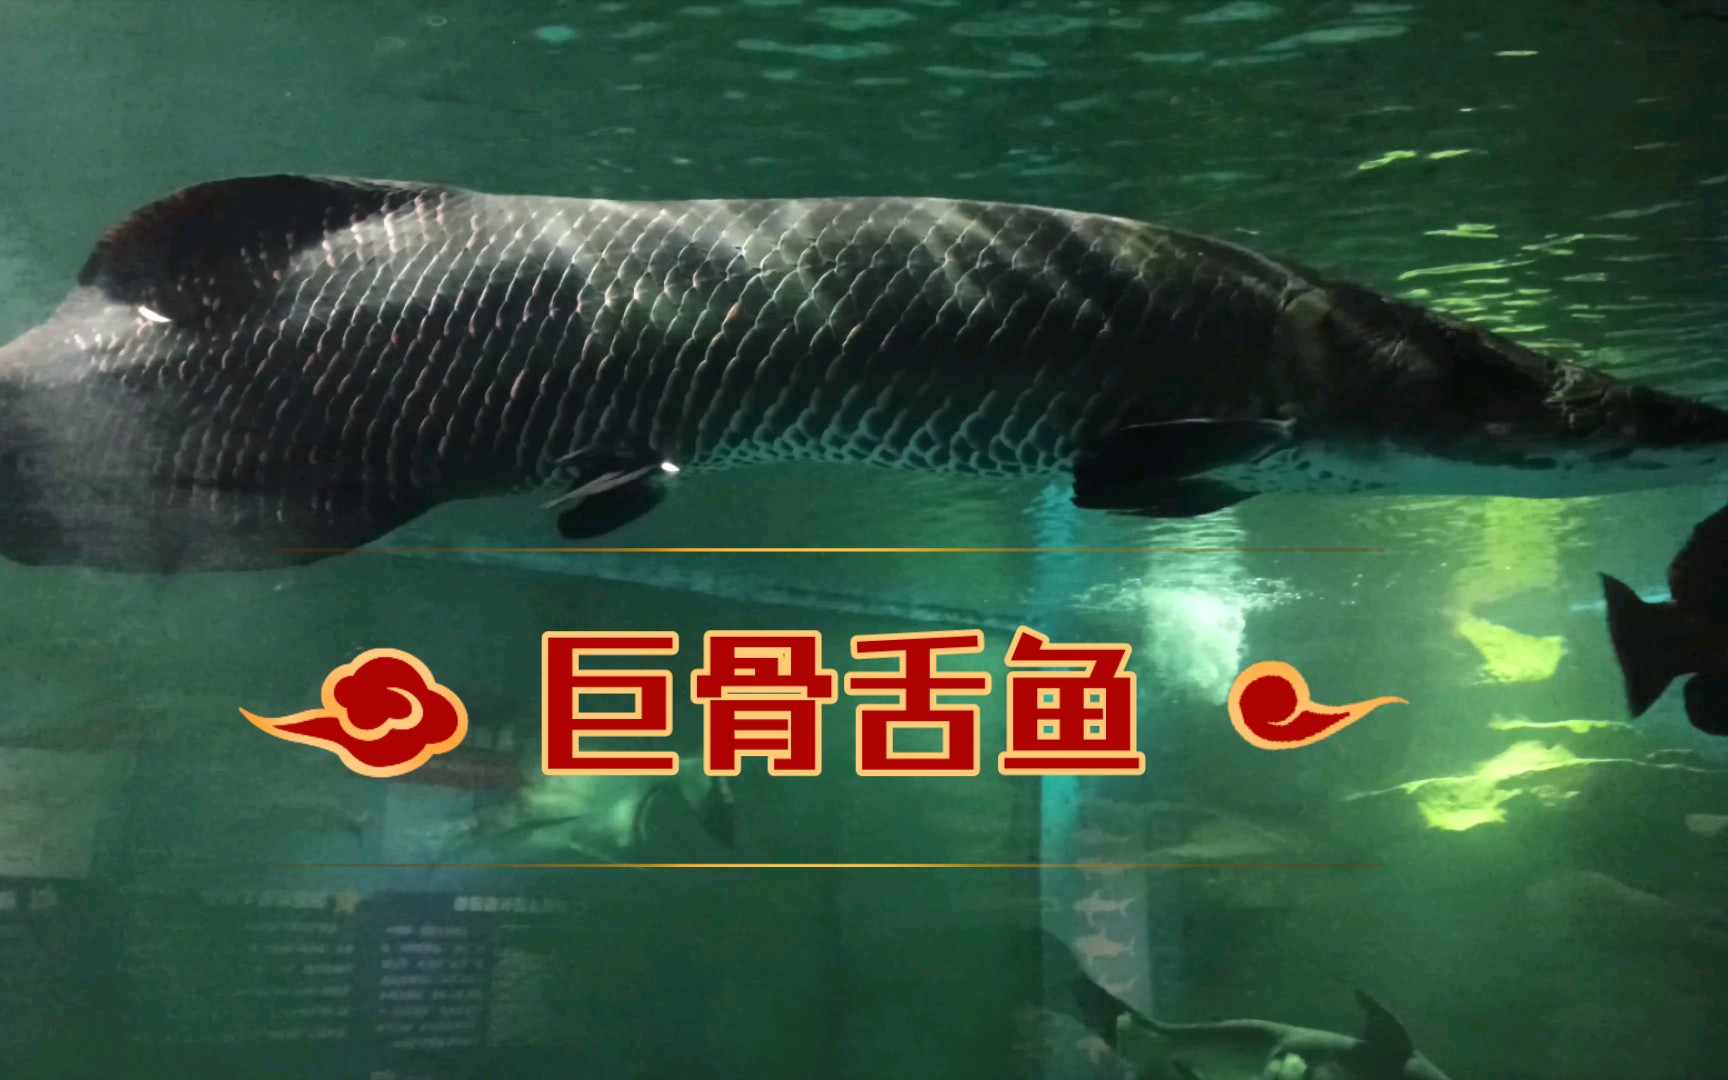 【巨骨舌鱼】海洋馆里的几条巨骨舌鱼,有波光粼粼的感觉!